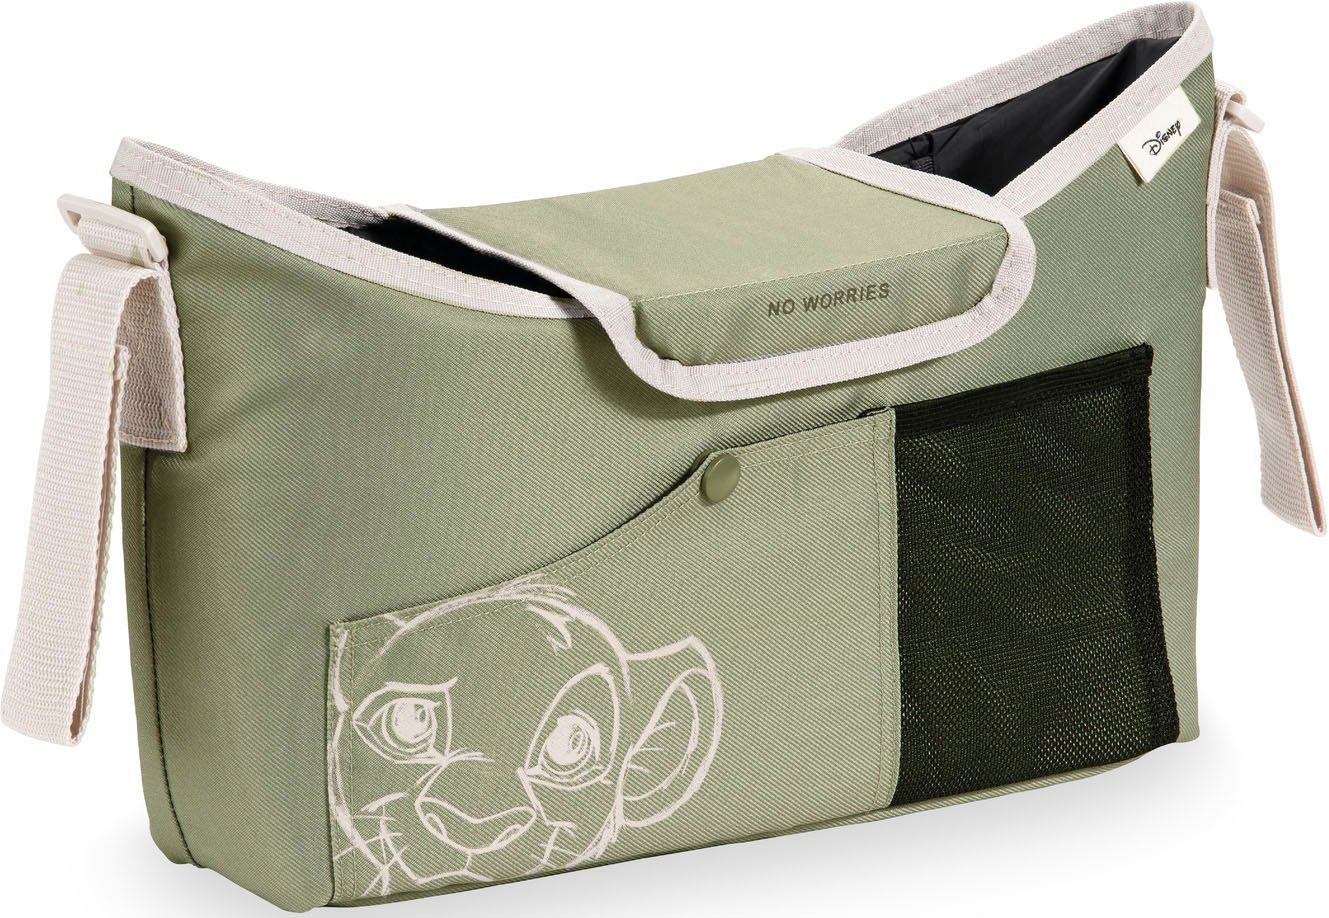 Hauck Pushchair Bag, Kinderwagen-Tasche Simba Olive